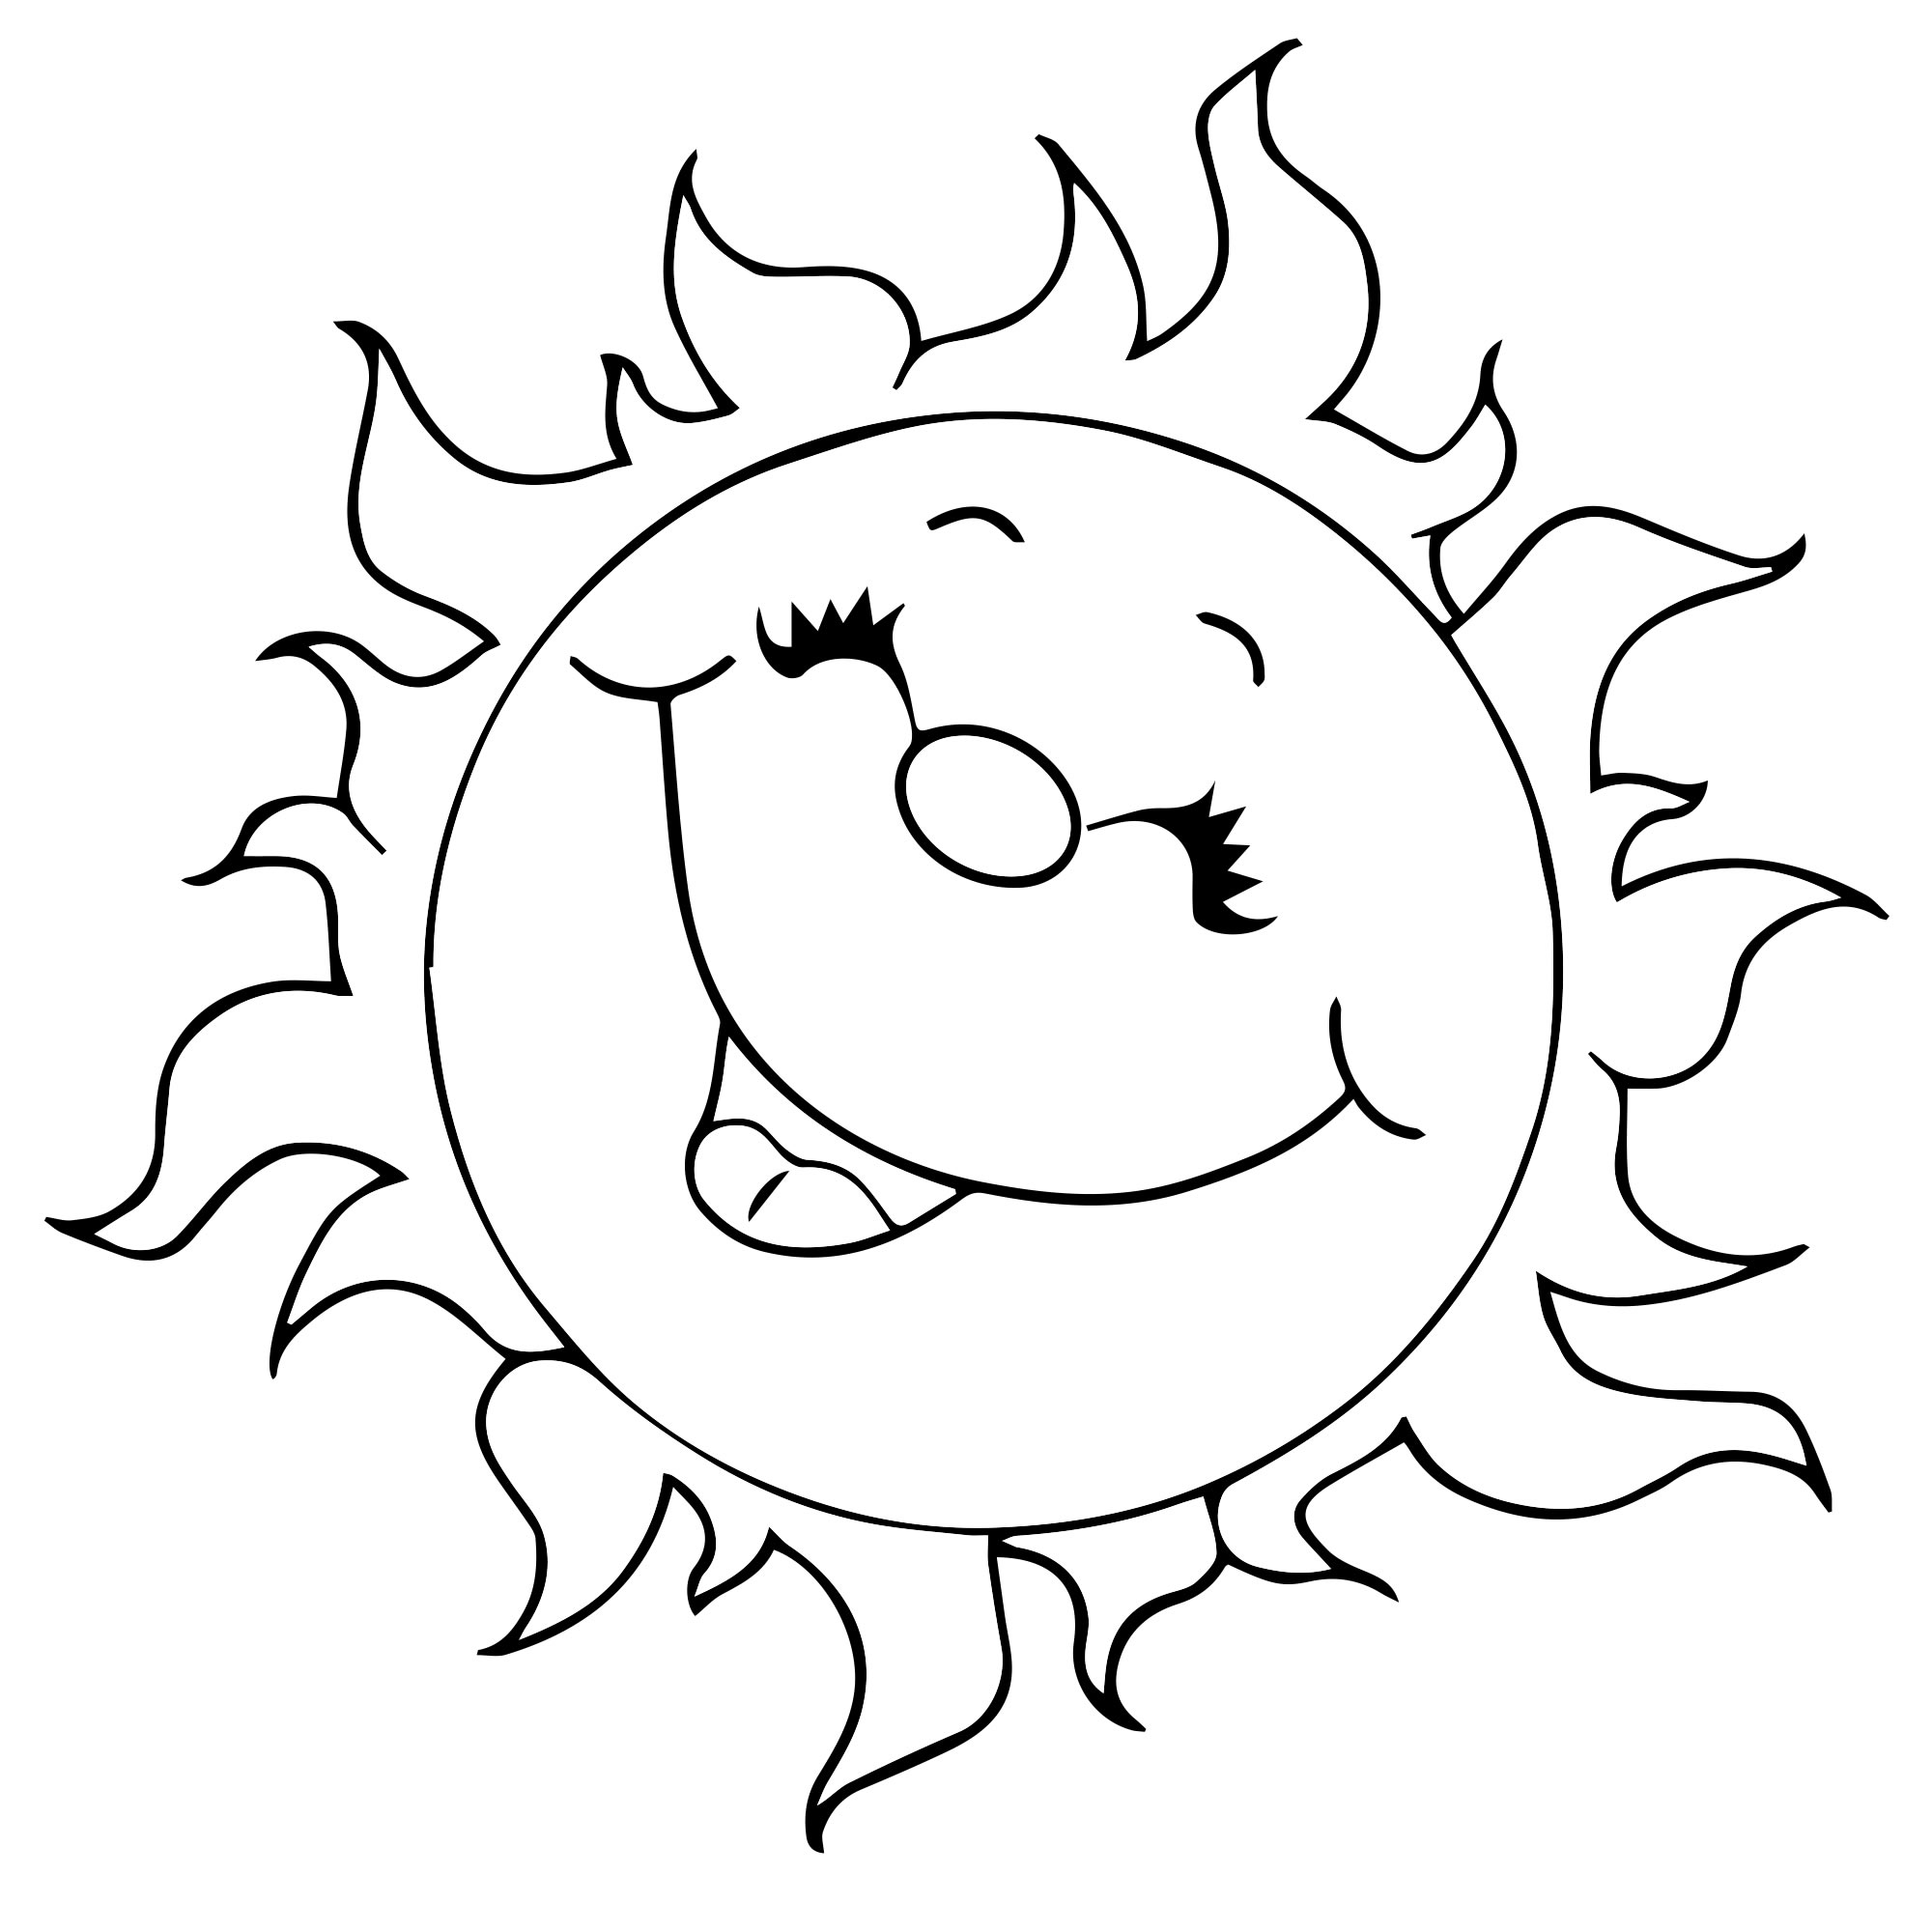 Весёлое солнышко раскраска для детей